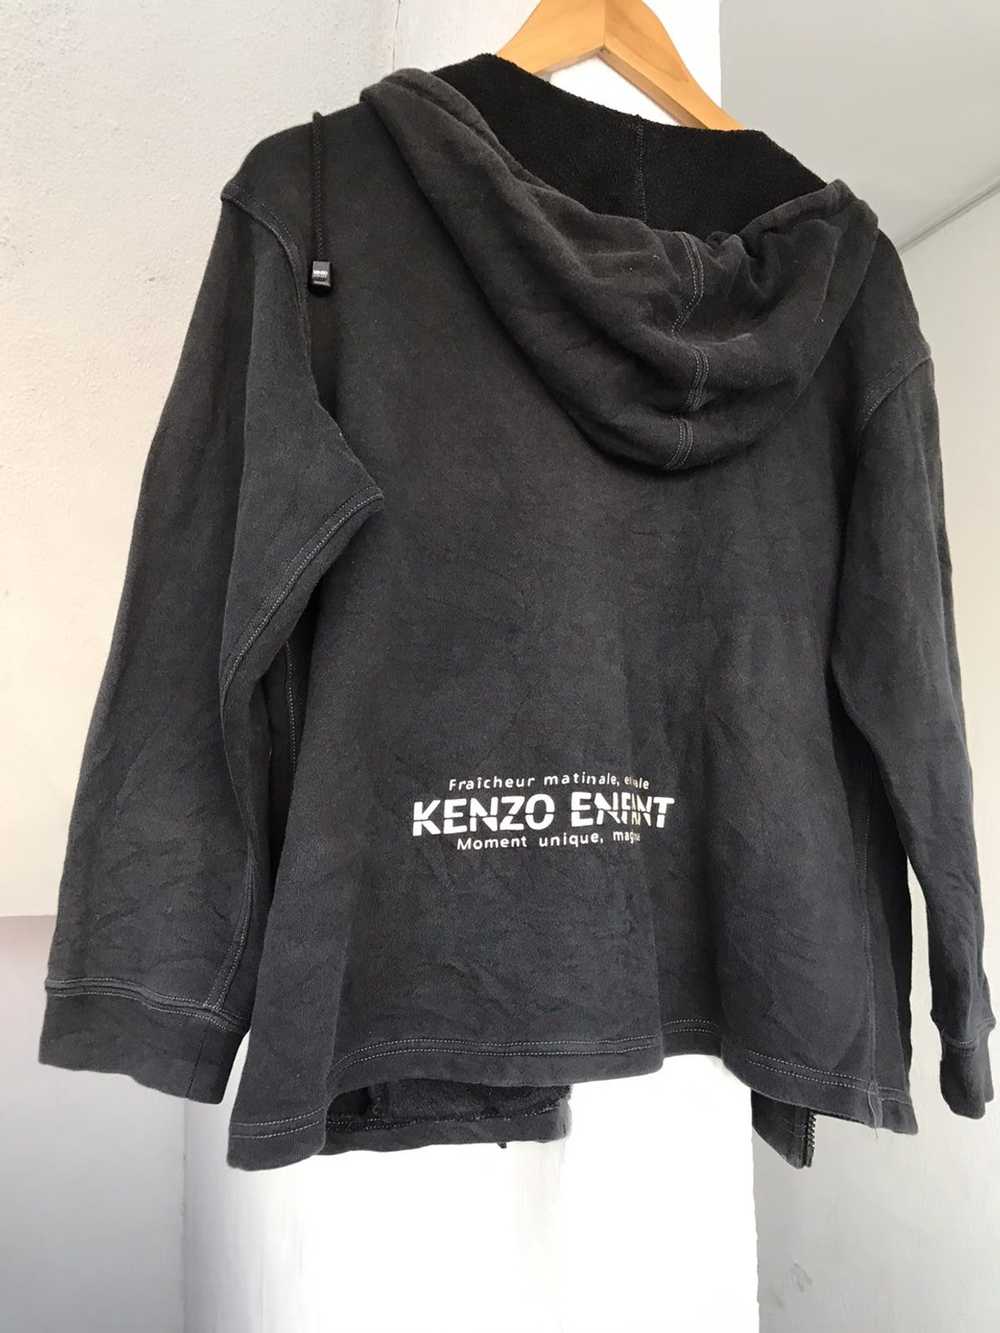 Kenzo Kenzo Enfant Black Hoodie - image 11